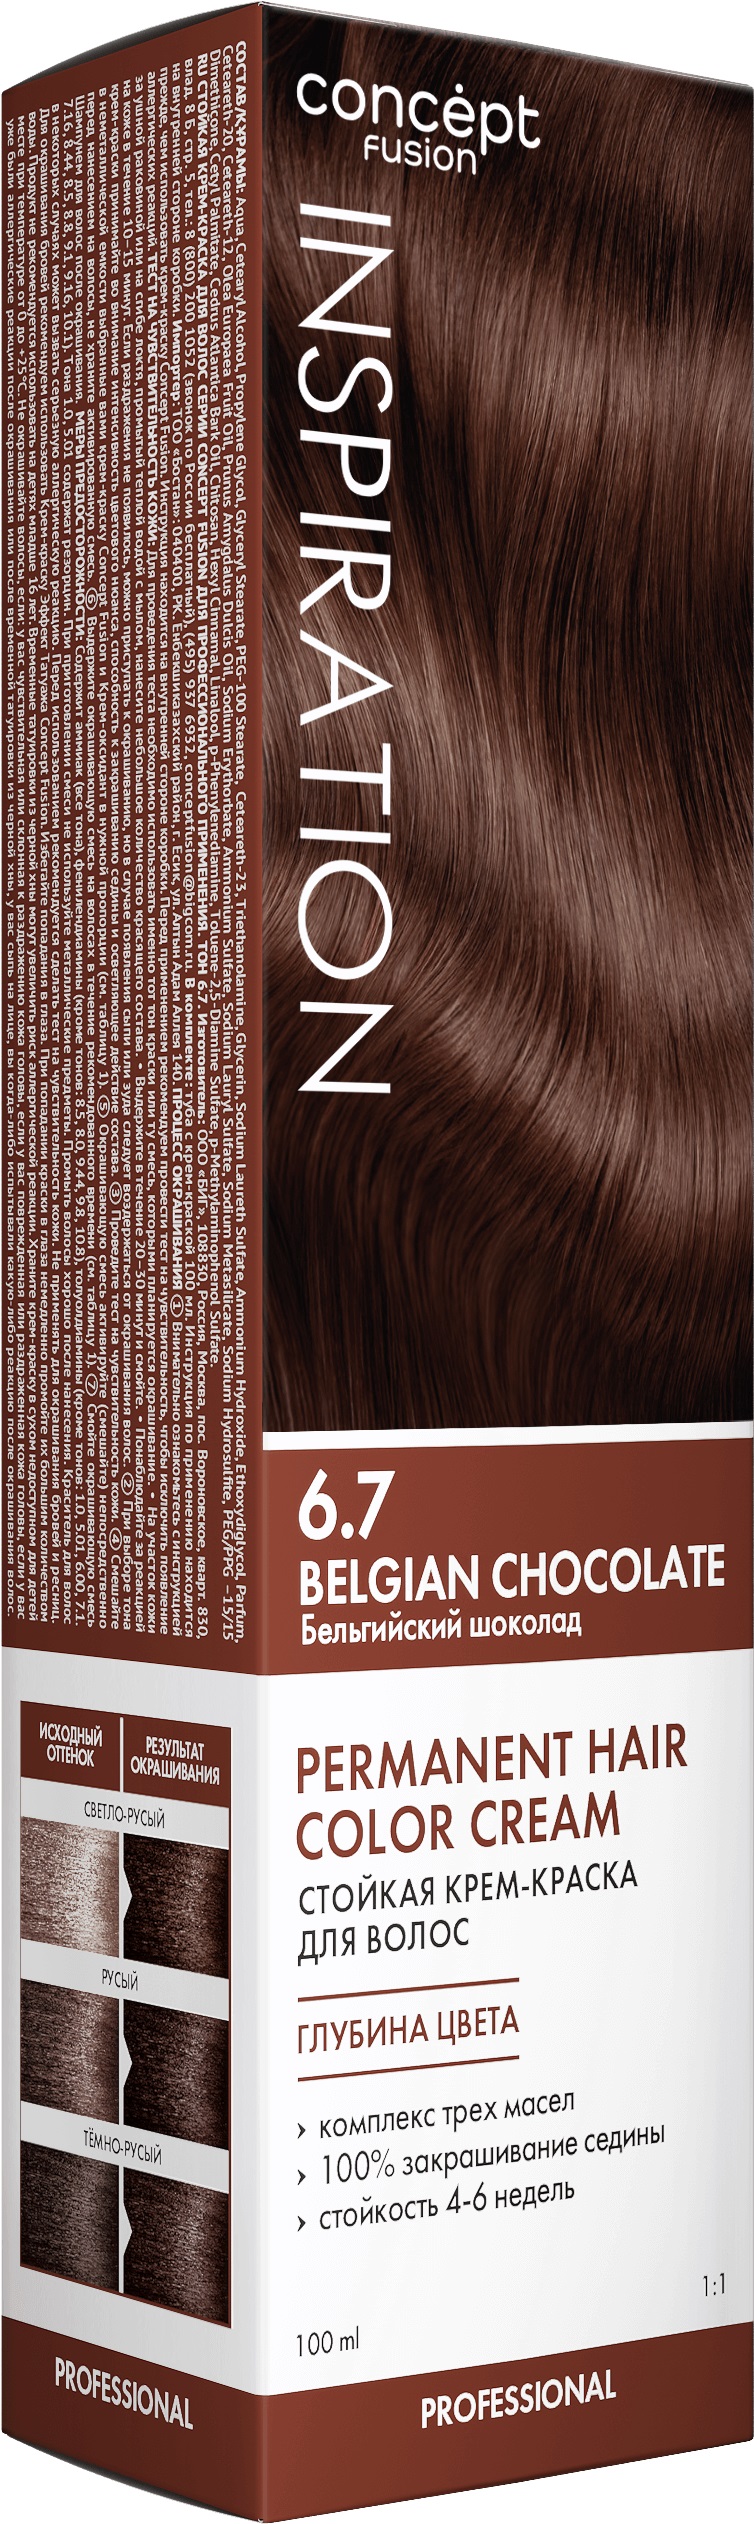 Крем-краска Concept Fusion Inspiration бельгийский шоколад, №6.7, 100 мл lacoste inspiration 50